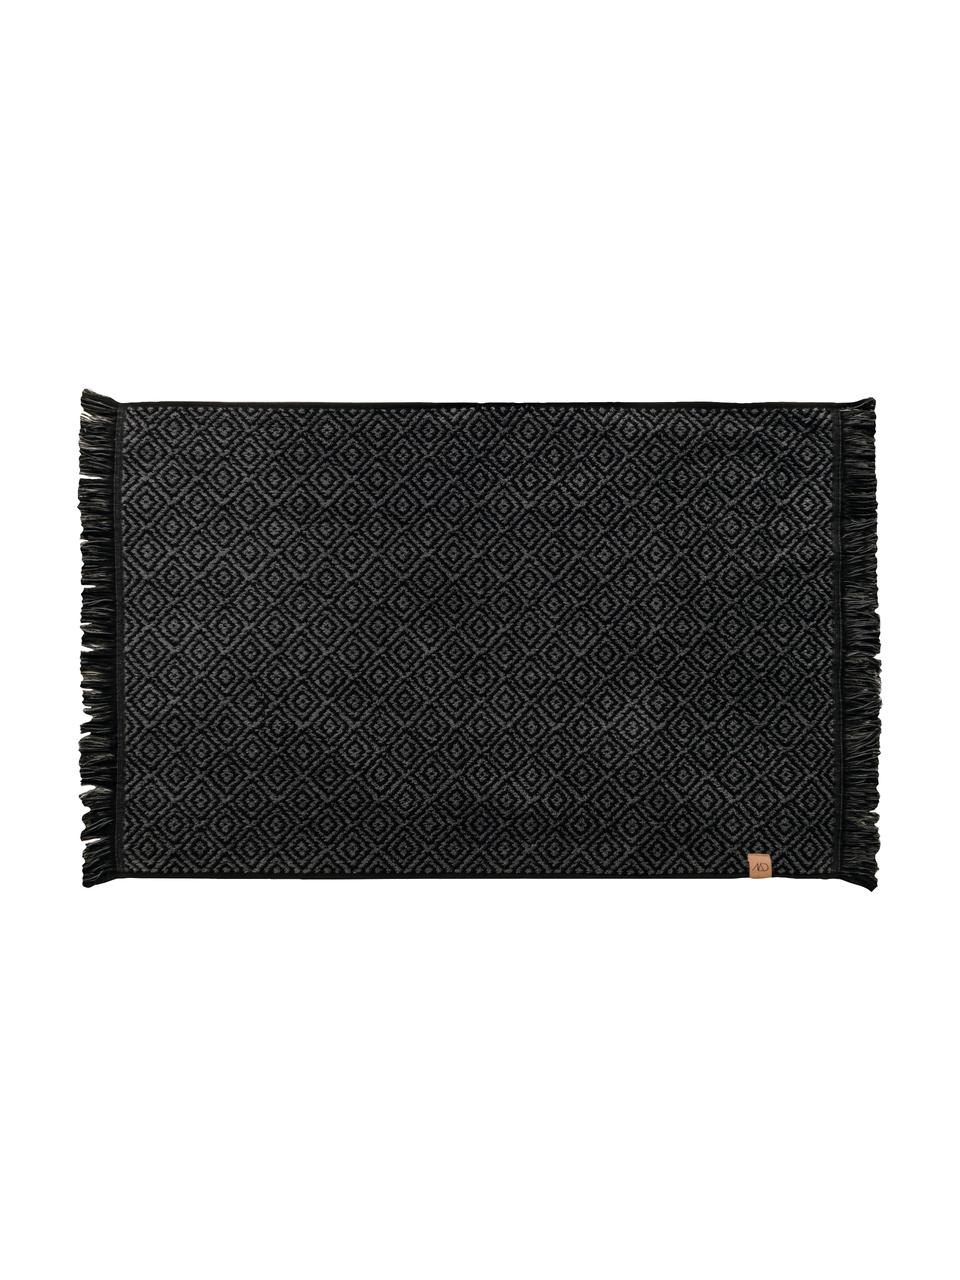 Tapis de bain noir/gris Marocco, Coton, Noir, gris, larg. 50 x long. 80 cm